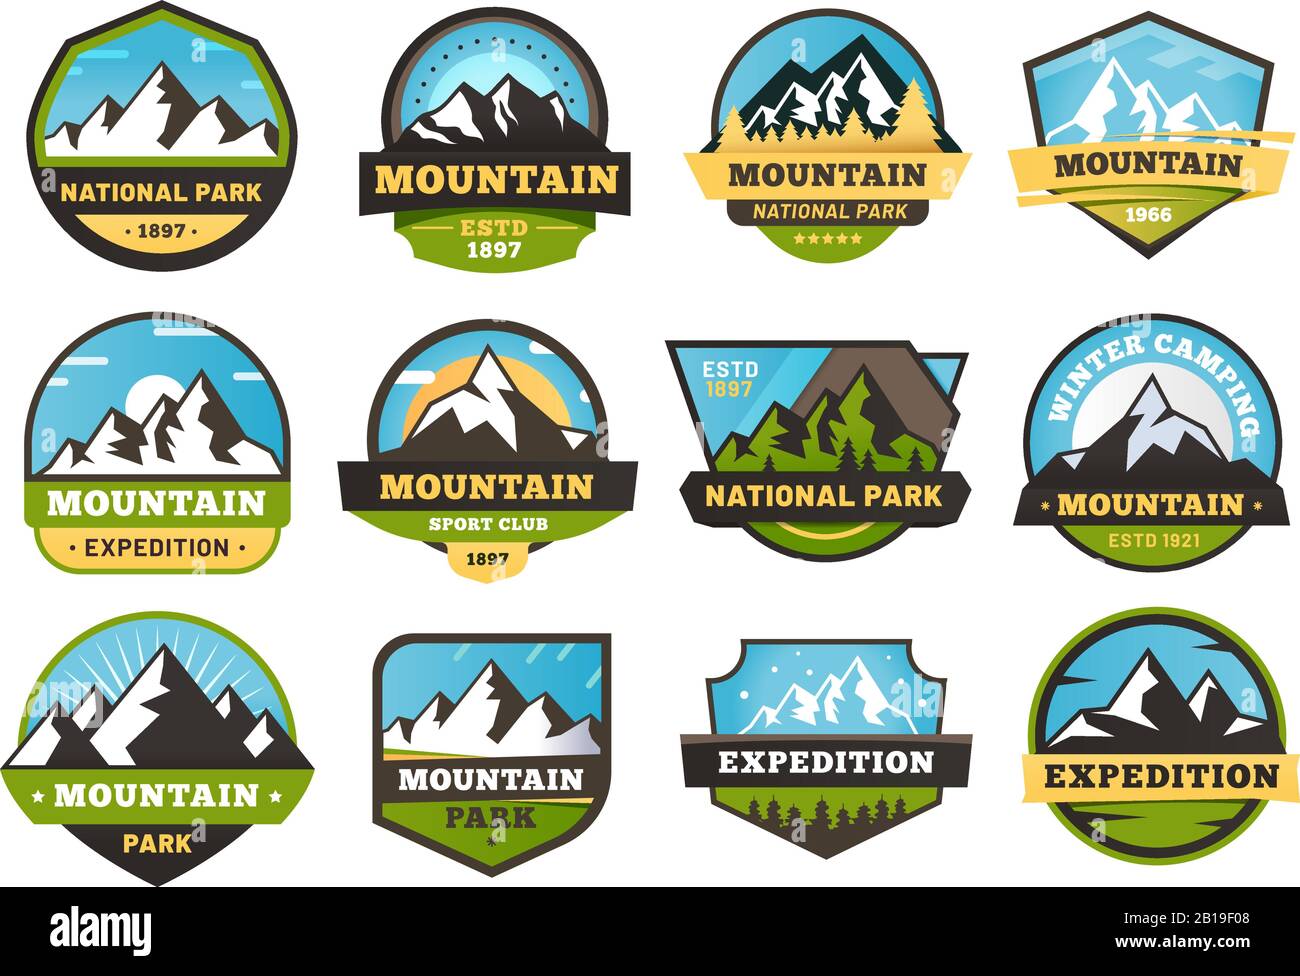 Die Bergexpedition ist ein Emblem. Reise-Etiketten im Freien,  Bergwander-Aufkleber-Emblem und Sommer-Camping-Abzeichen Vektorgrafik-Set  Stock-Vektorgrafik - Alamy